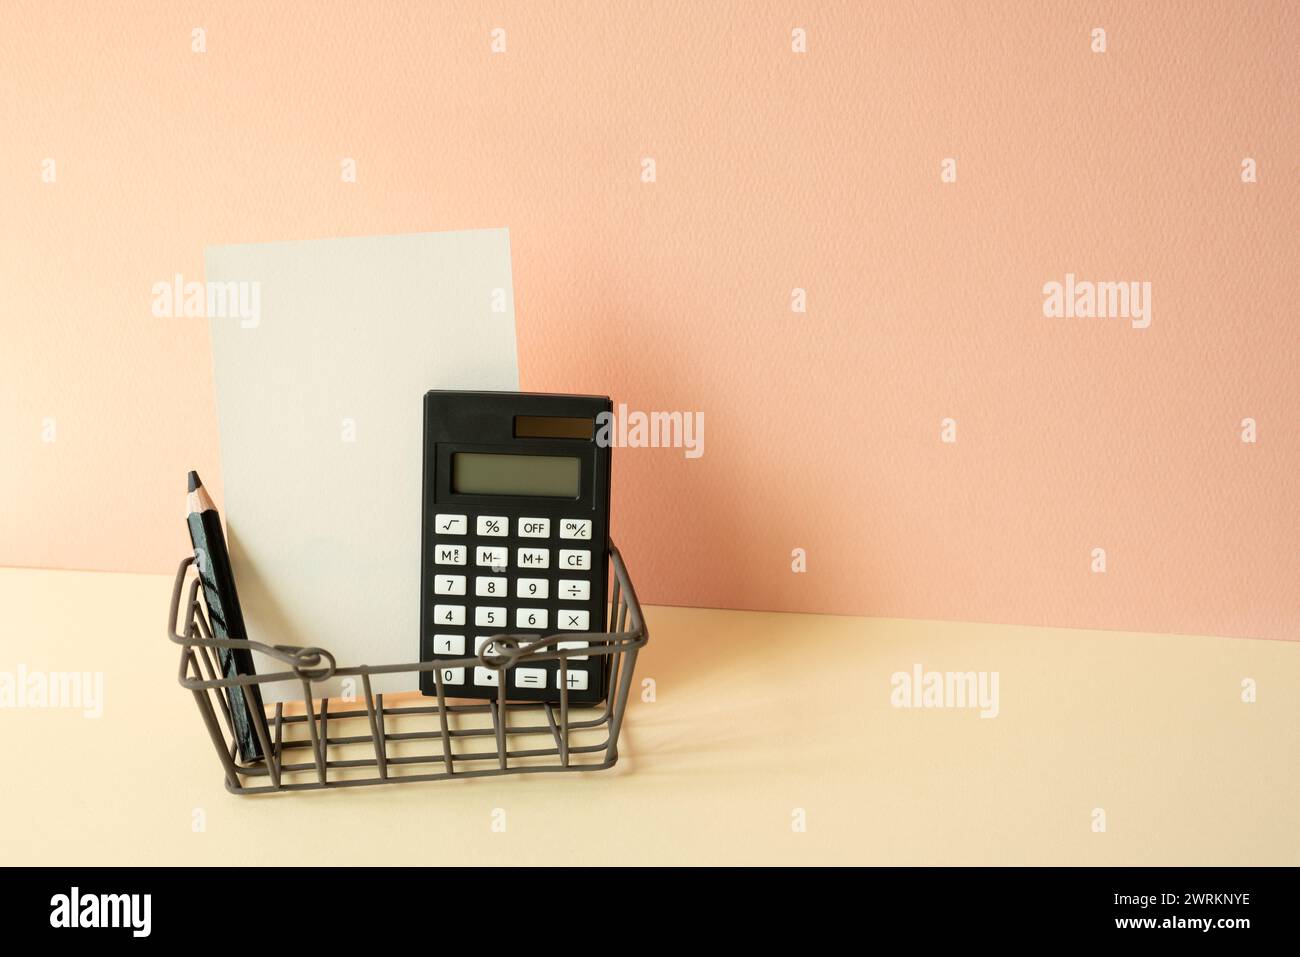 Carrello per gli acquisti consumer con calcolatrice, matita, blocco appunti su sfondo avorio e rosa. Concetto economico Foto Stock